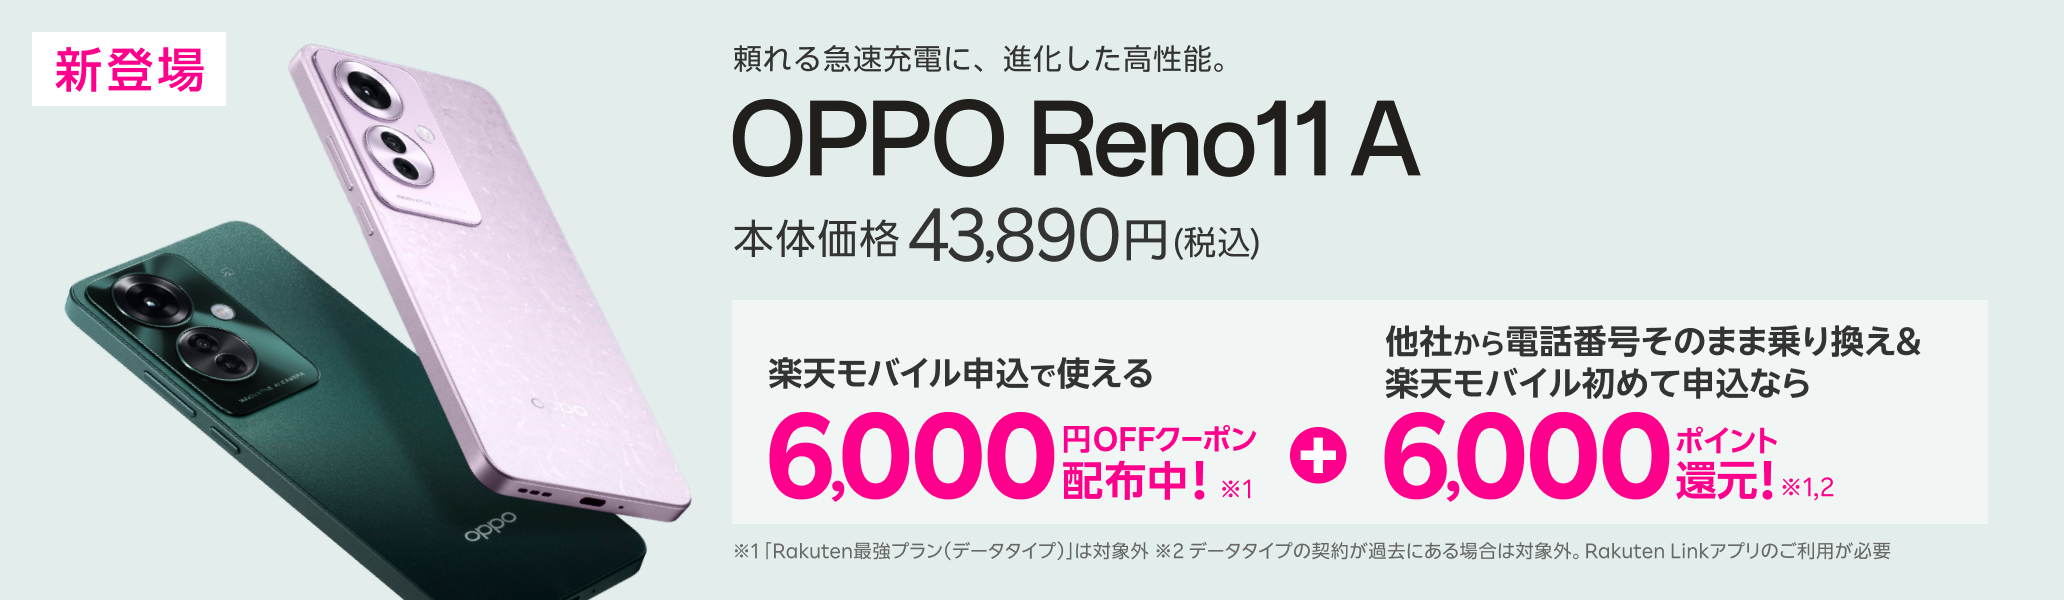 頼れる急速充電に、進化した高性能。新登場のOPPO Reno 11 Aは、本体価格が43,890円(税込)。楽天モバイルお申し込みで使える6,000円OFFクーポン配布中。さらに他社からの電話番号そのままで乗り換えと楽天モバイルが初めてのお申し込みなら6,000ポイント還元。「Rakuten最強プラン(データタイプ)」は対象外。データタイプの契約が過去にある場合は対象外。Rakuten Linkアプリのご利用が必要です。